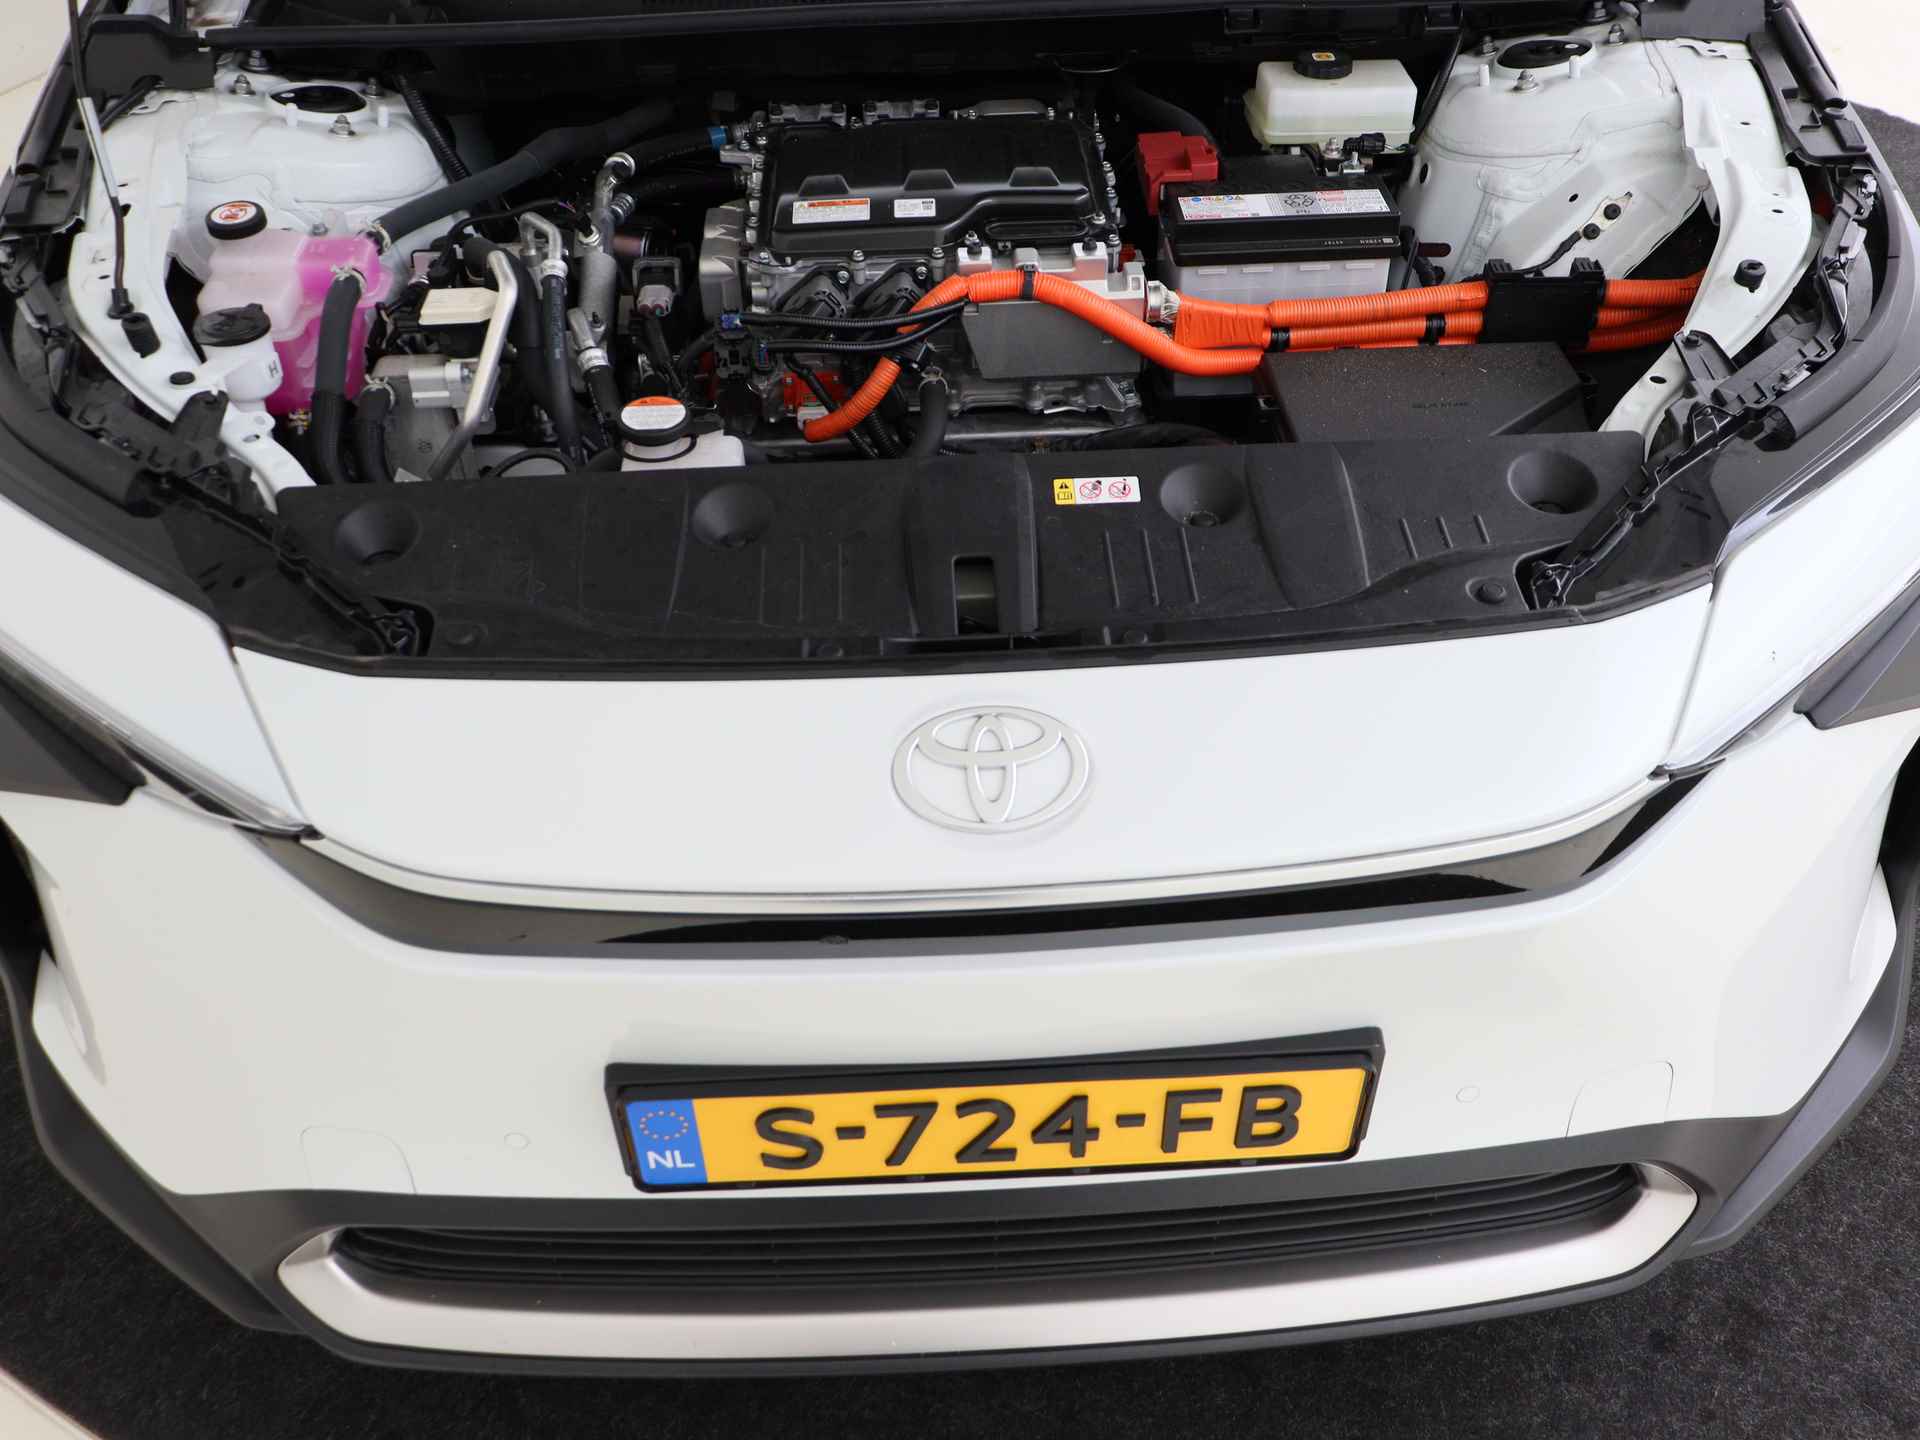 Toyota Bz4x Launch Edition Premium Bi-Tone uitvoering | Navigatie | Stoel&stuur verwarming | My T app | Panoramadak | Wegenbelasting vrij | Subsidie €2000,- aanvraag mogelijk. - 45/48